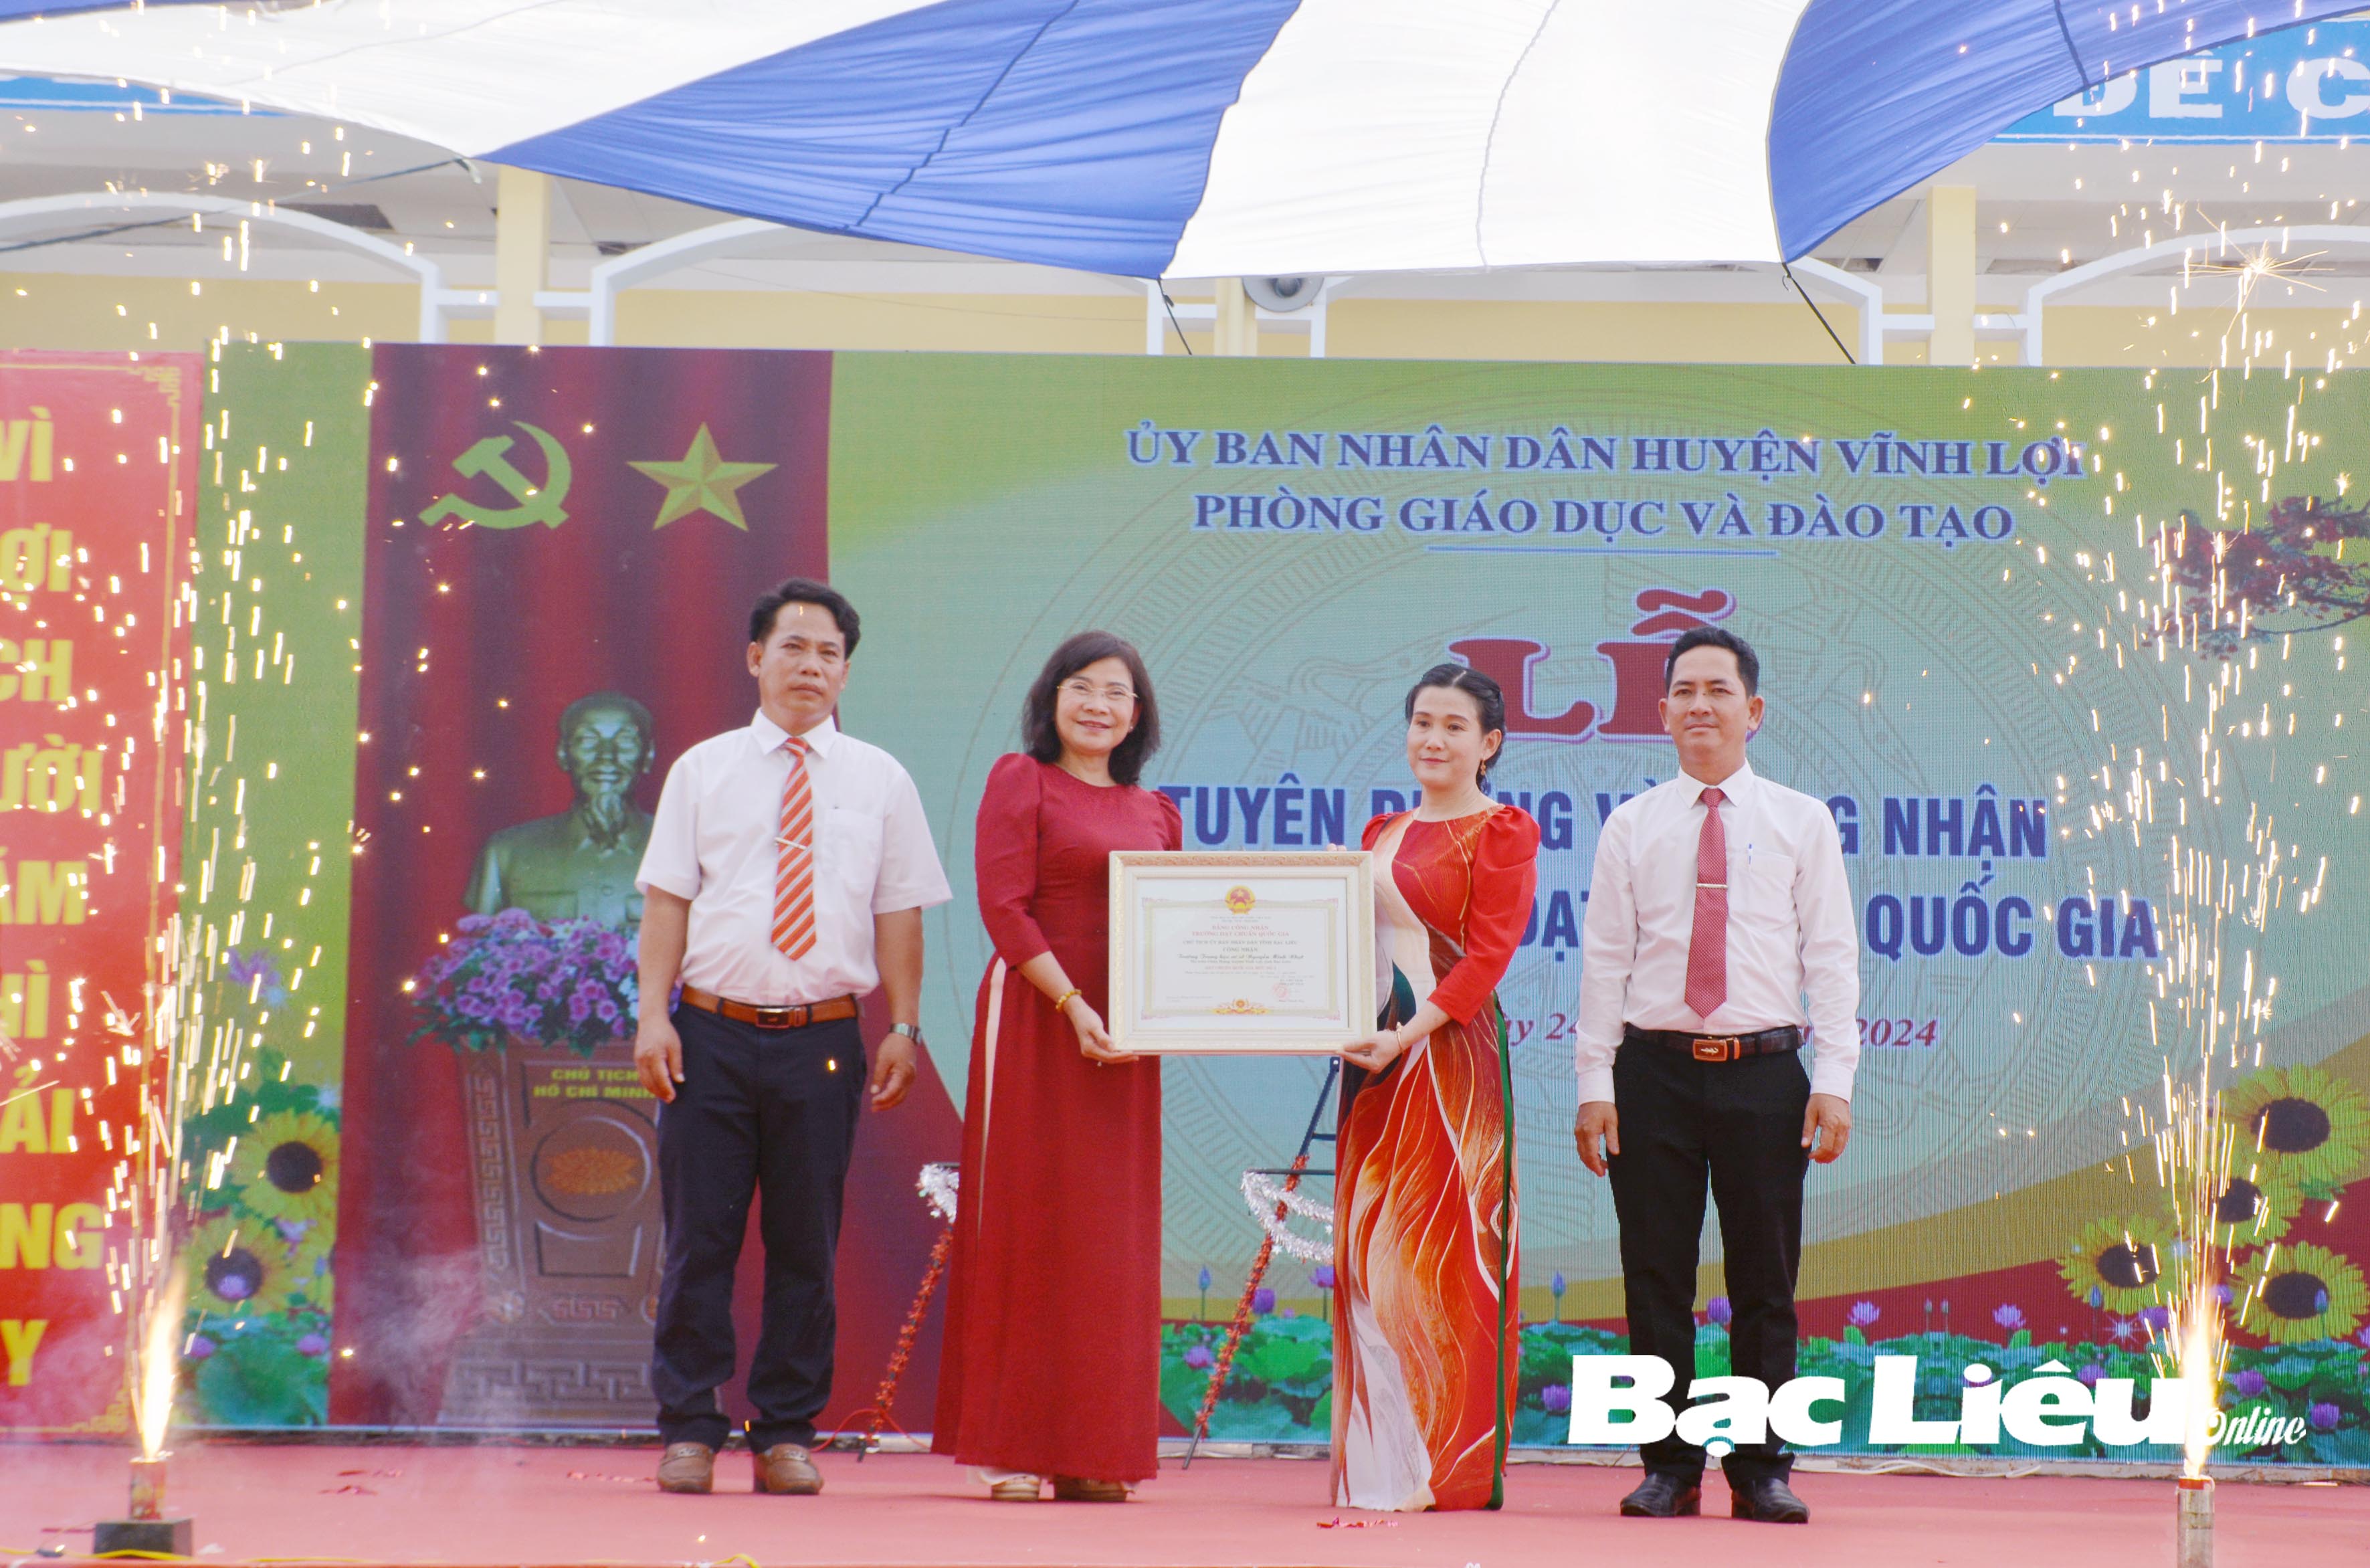 Huyện Vĩnh Lợi: 100% trường học đạt chuẩn quốc gia